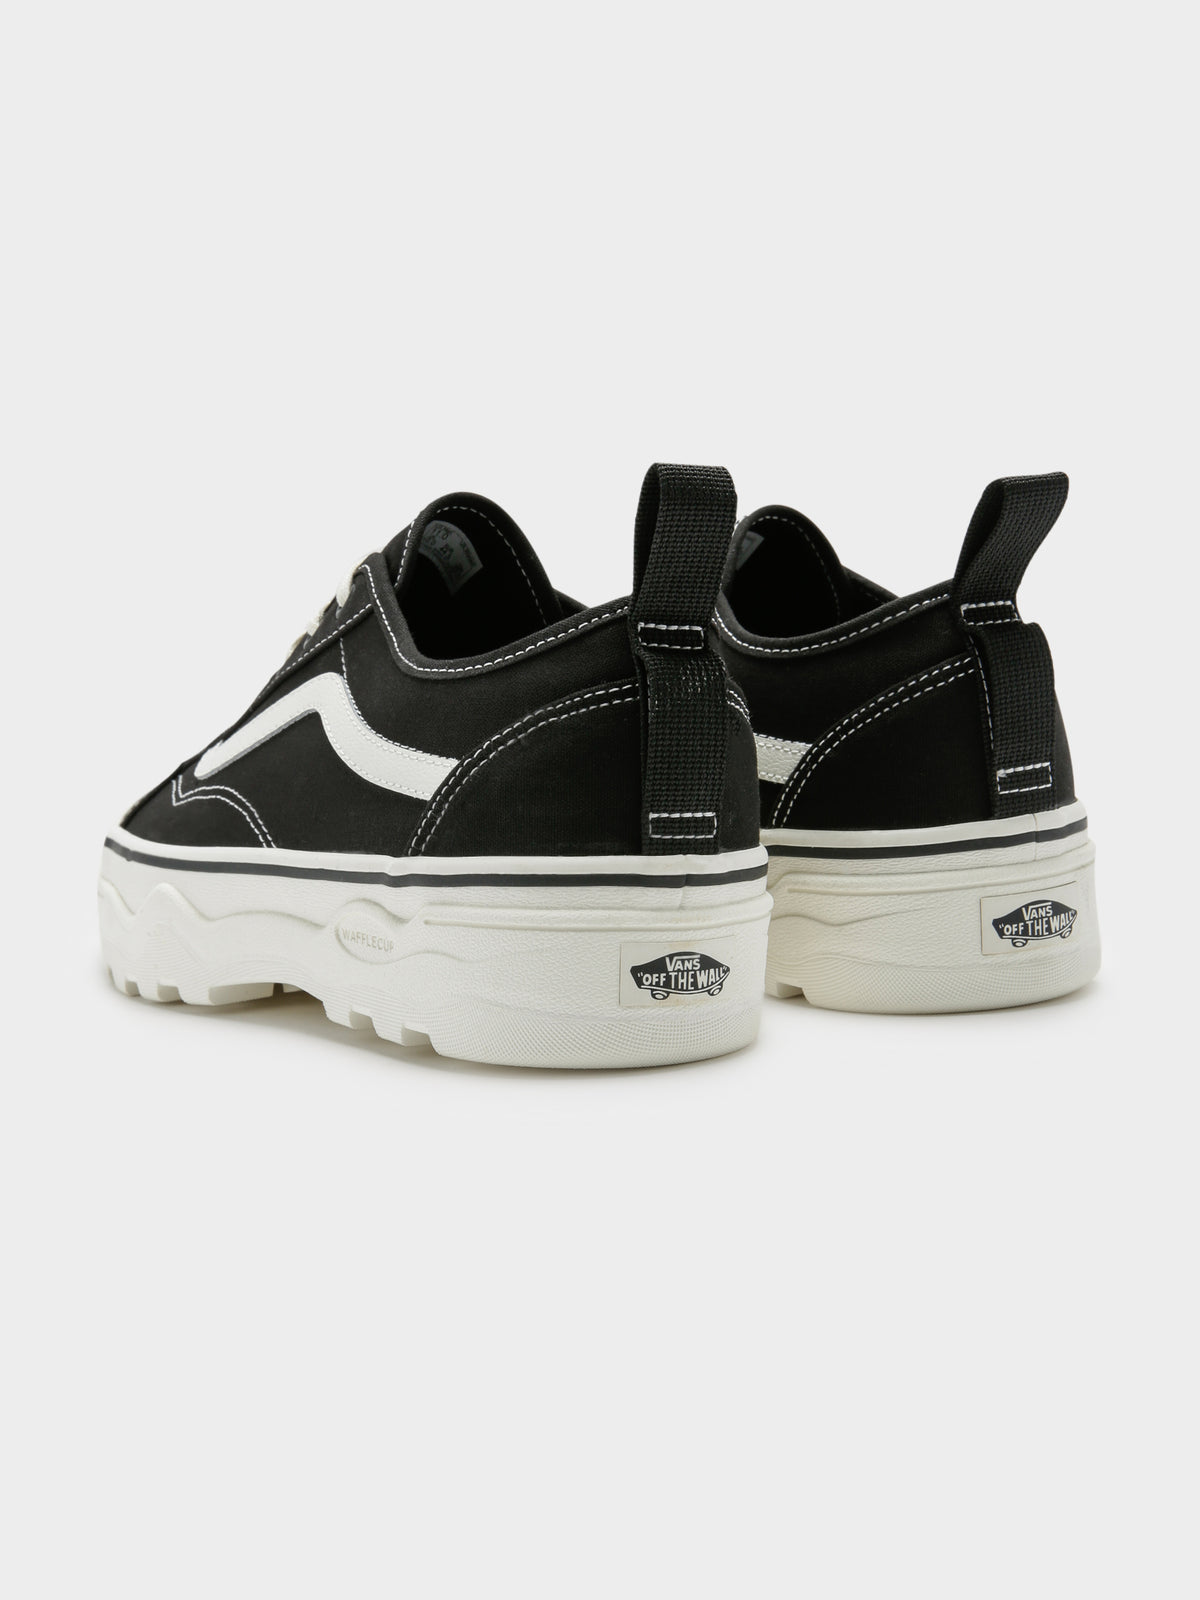 Unisex Sentry Old Skool Sneakers in Black